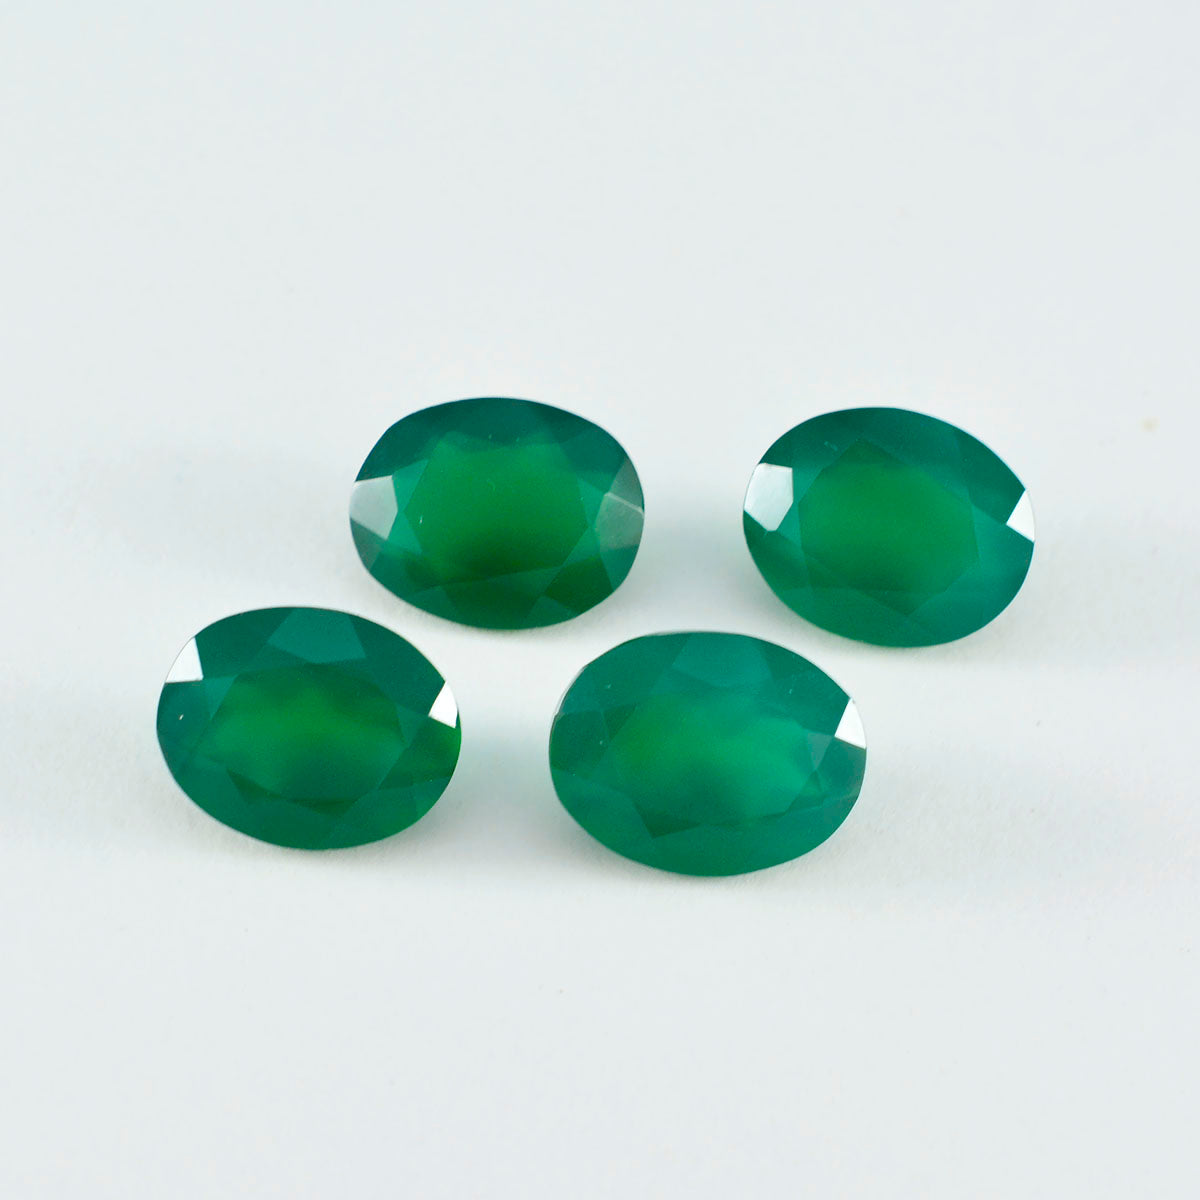 Riyogems 1 pièce d'onyx vert véritable à facettes 7x9mm, forme ovale, belle pierre précieuse de qualité